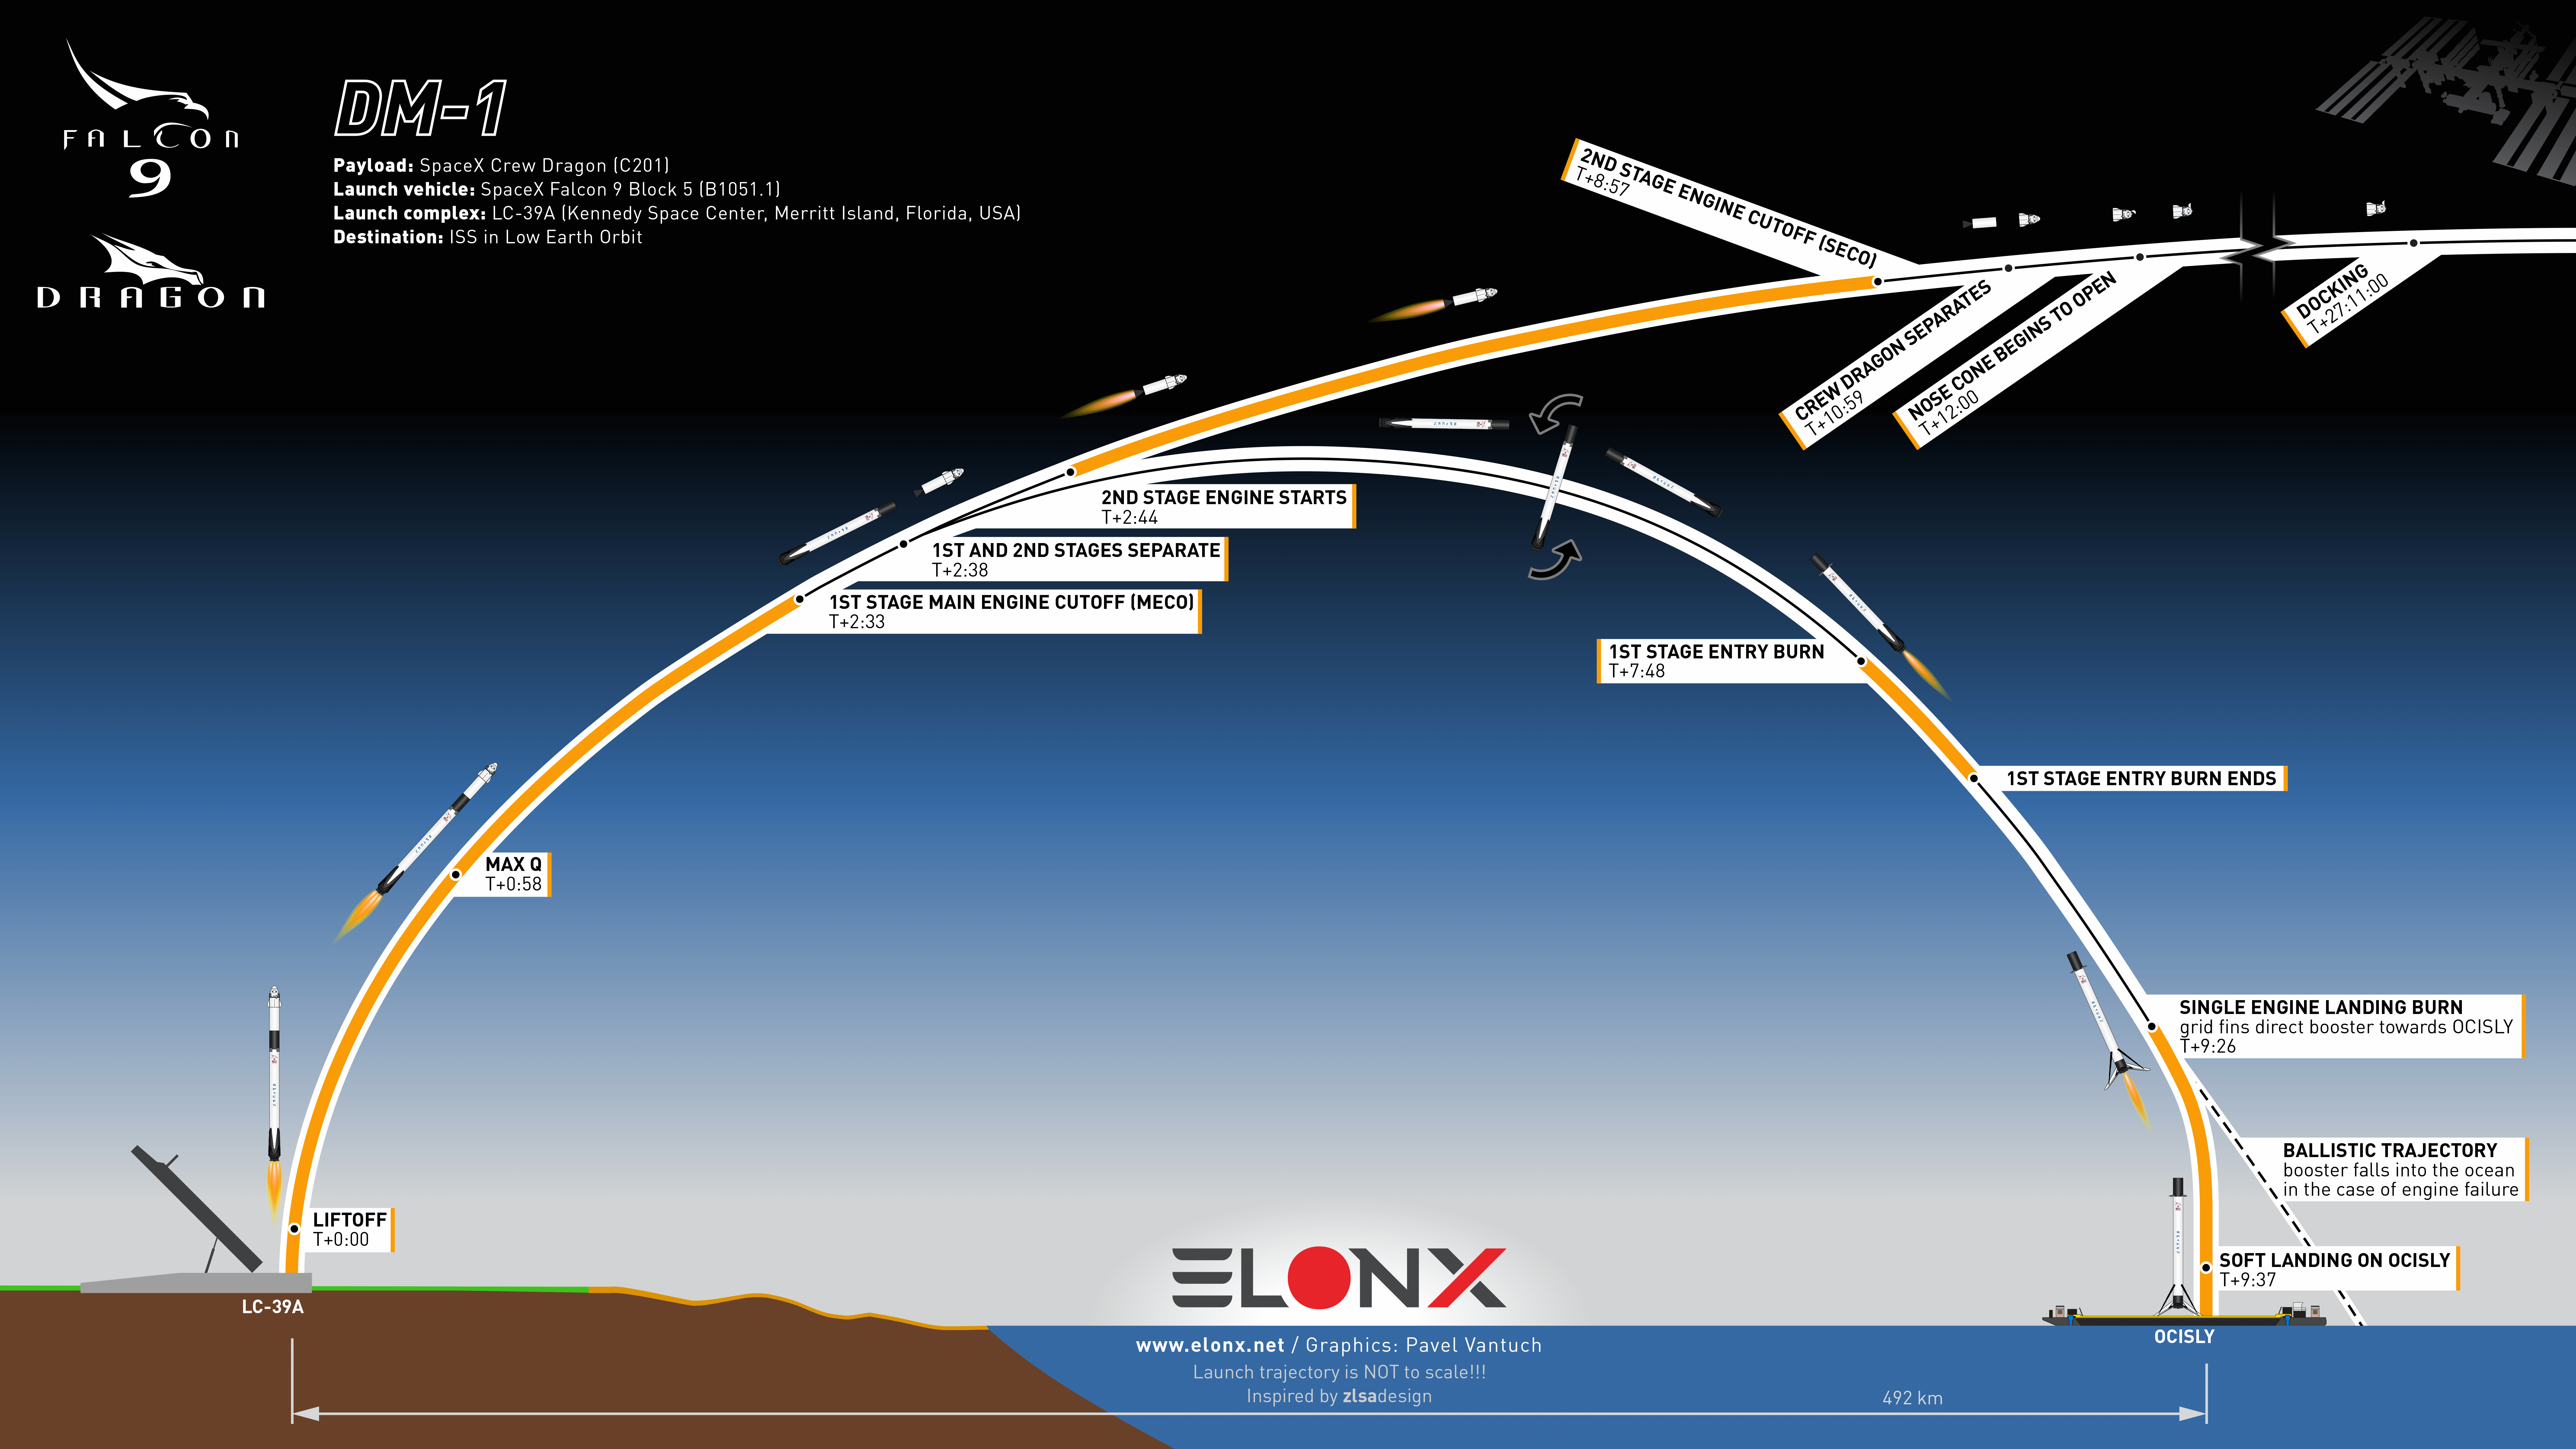 www.elonx.net